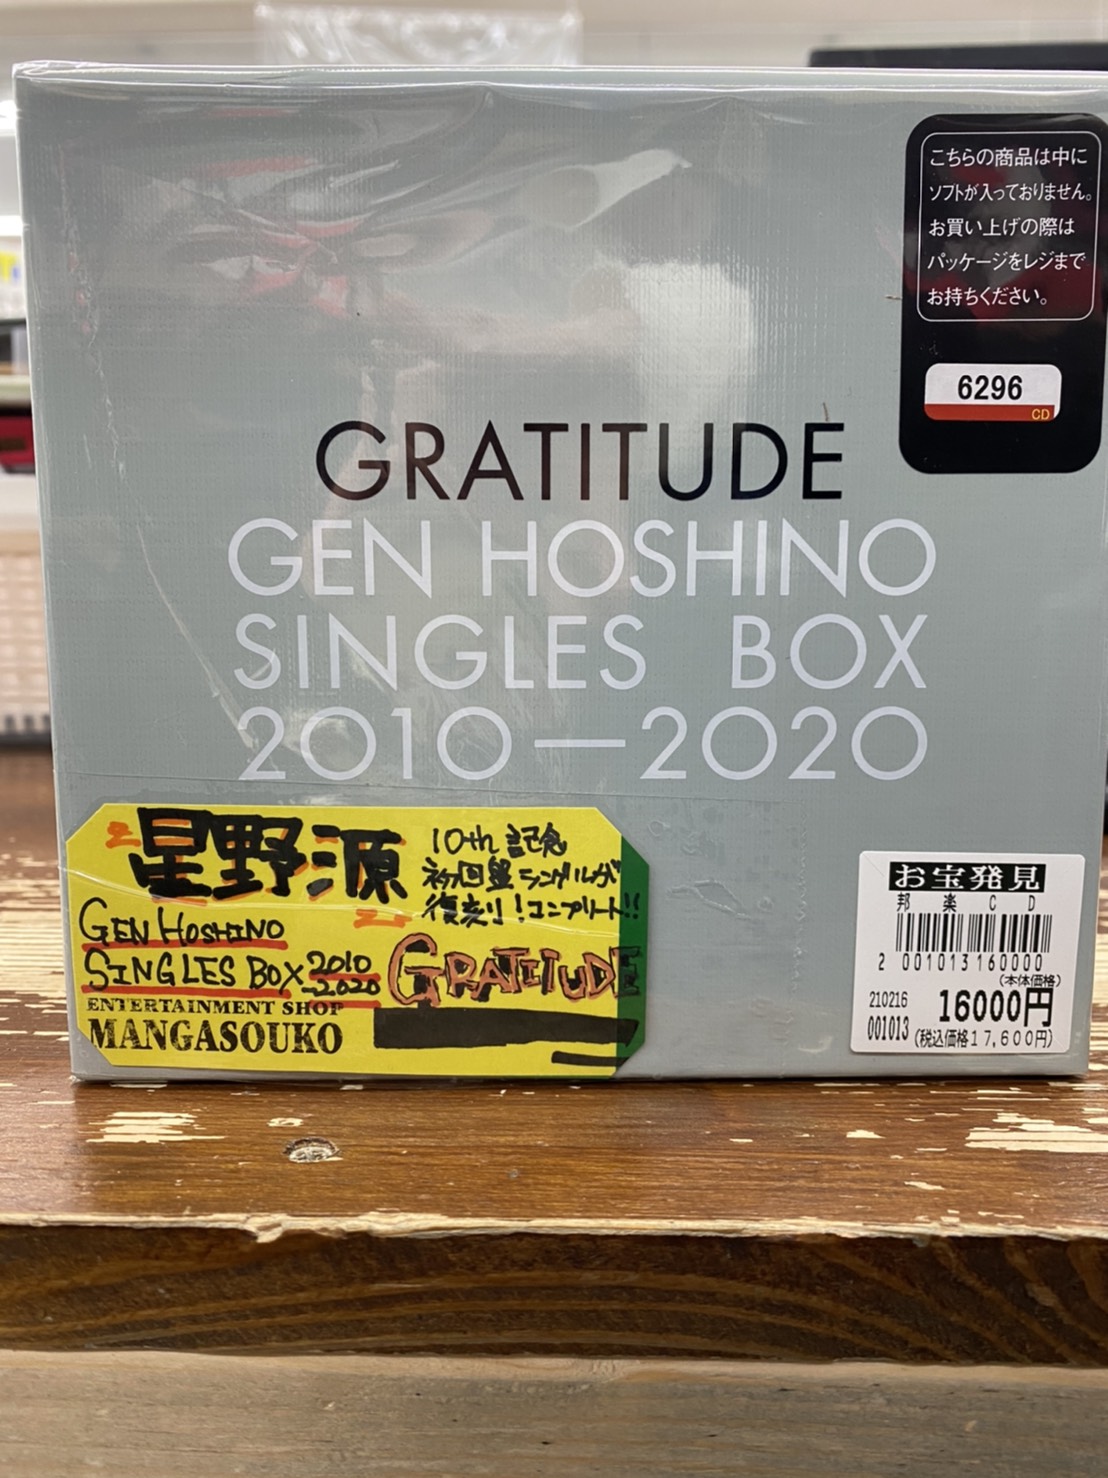 2/17☆〈星野源/Gen Hoshino Singles Box “GRATITUDE”〉お売りいただき 